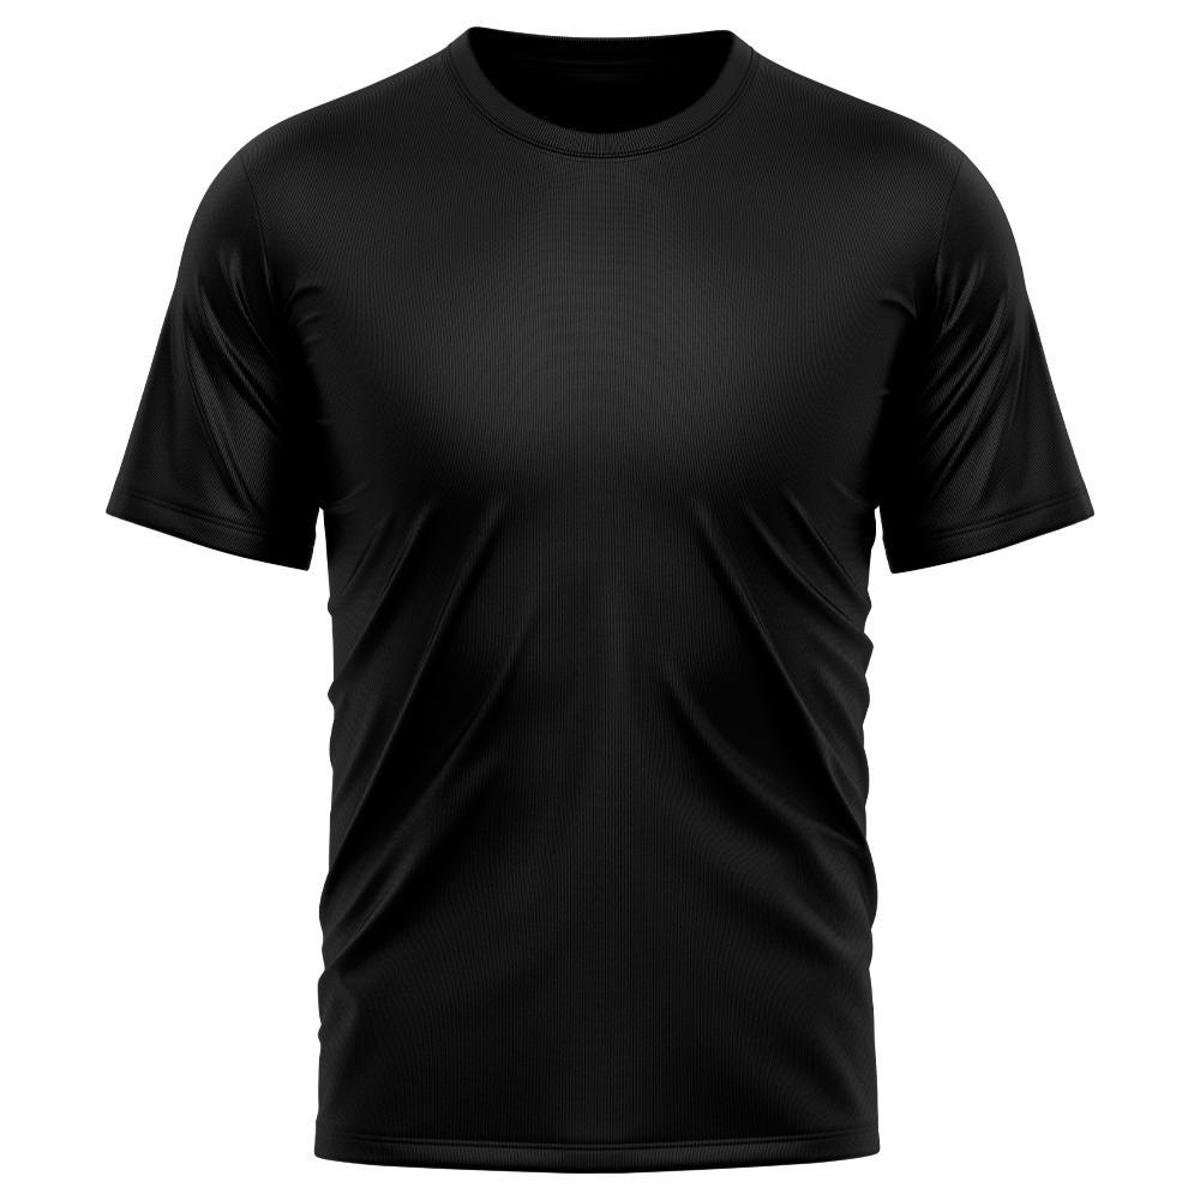 Camiseta Masculina Dry Proteção Solar UV Básica Lisa Treino Academia Passeio Camisa